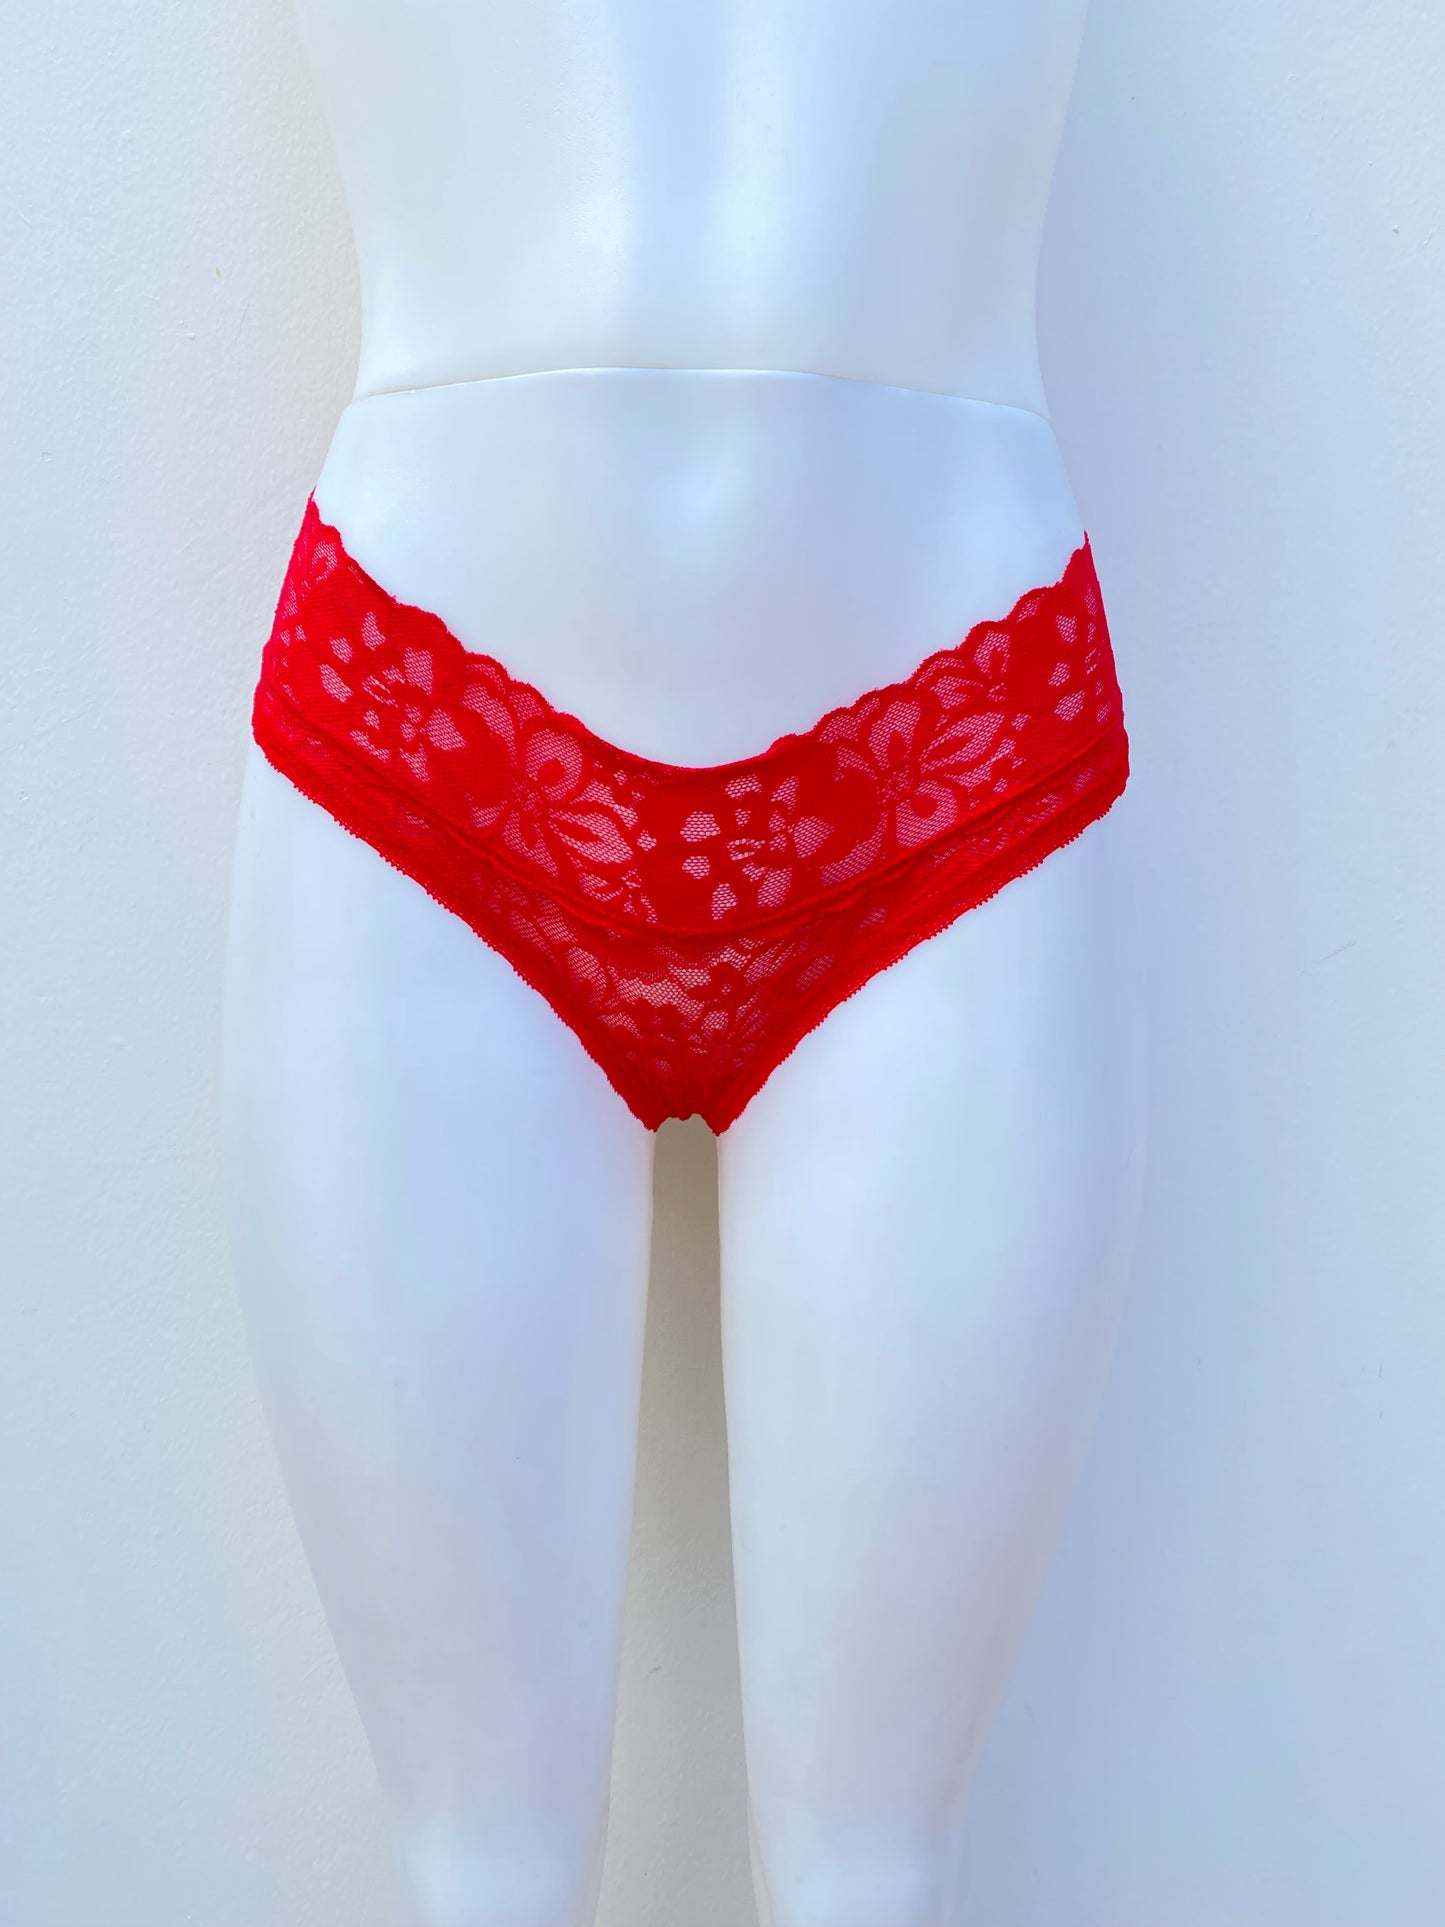 Panti Victoria Secret original, rojo de encaje con flores